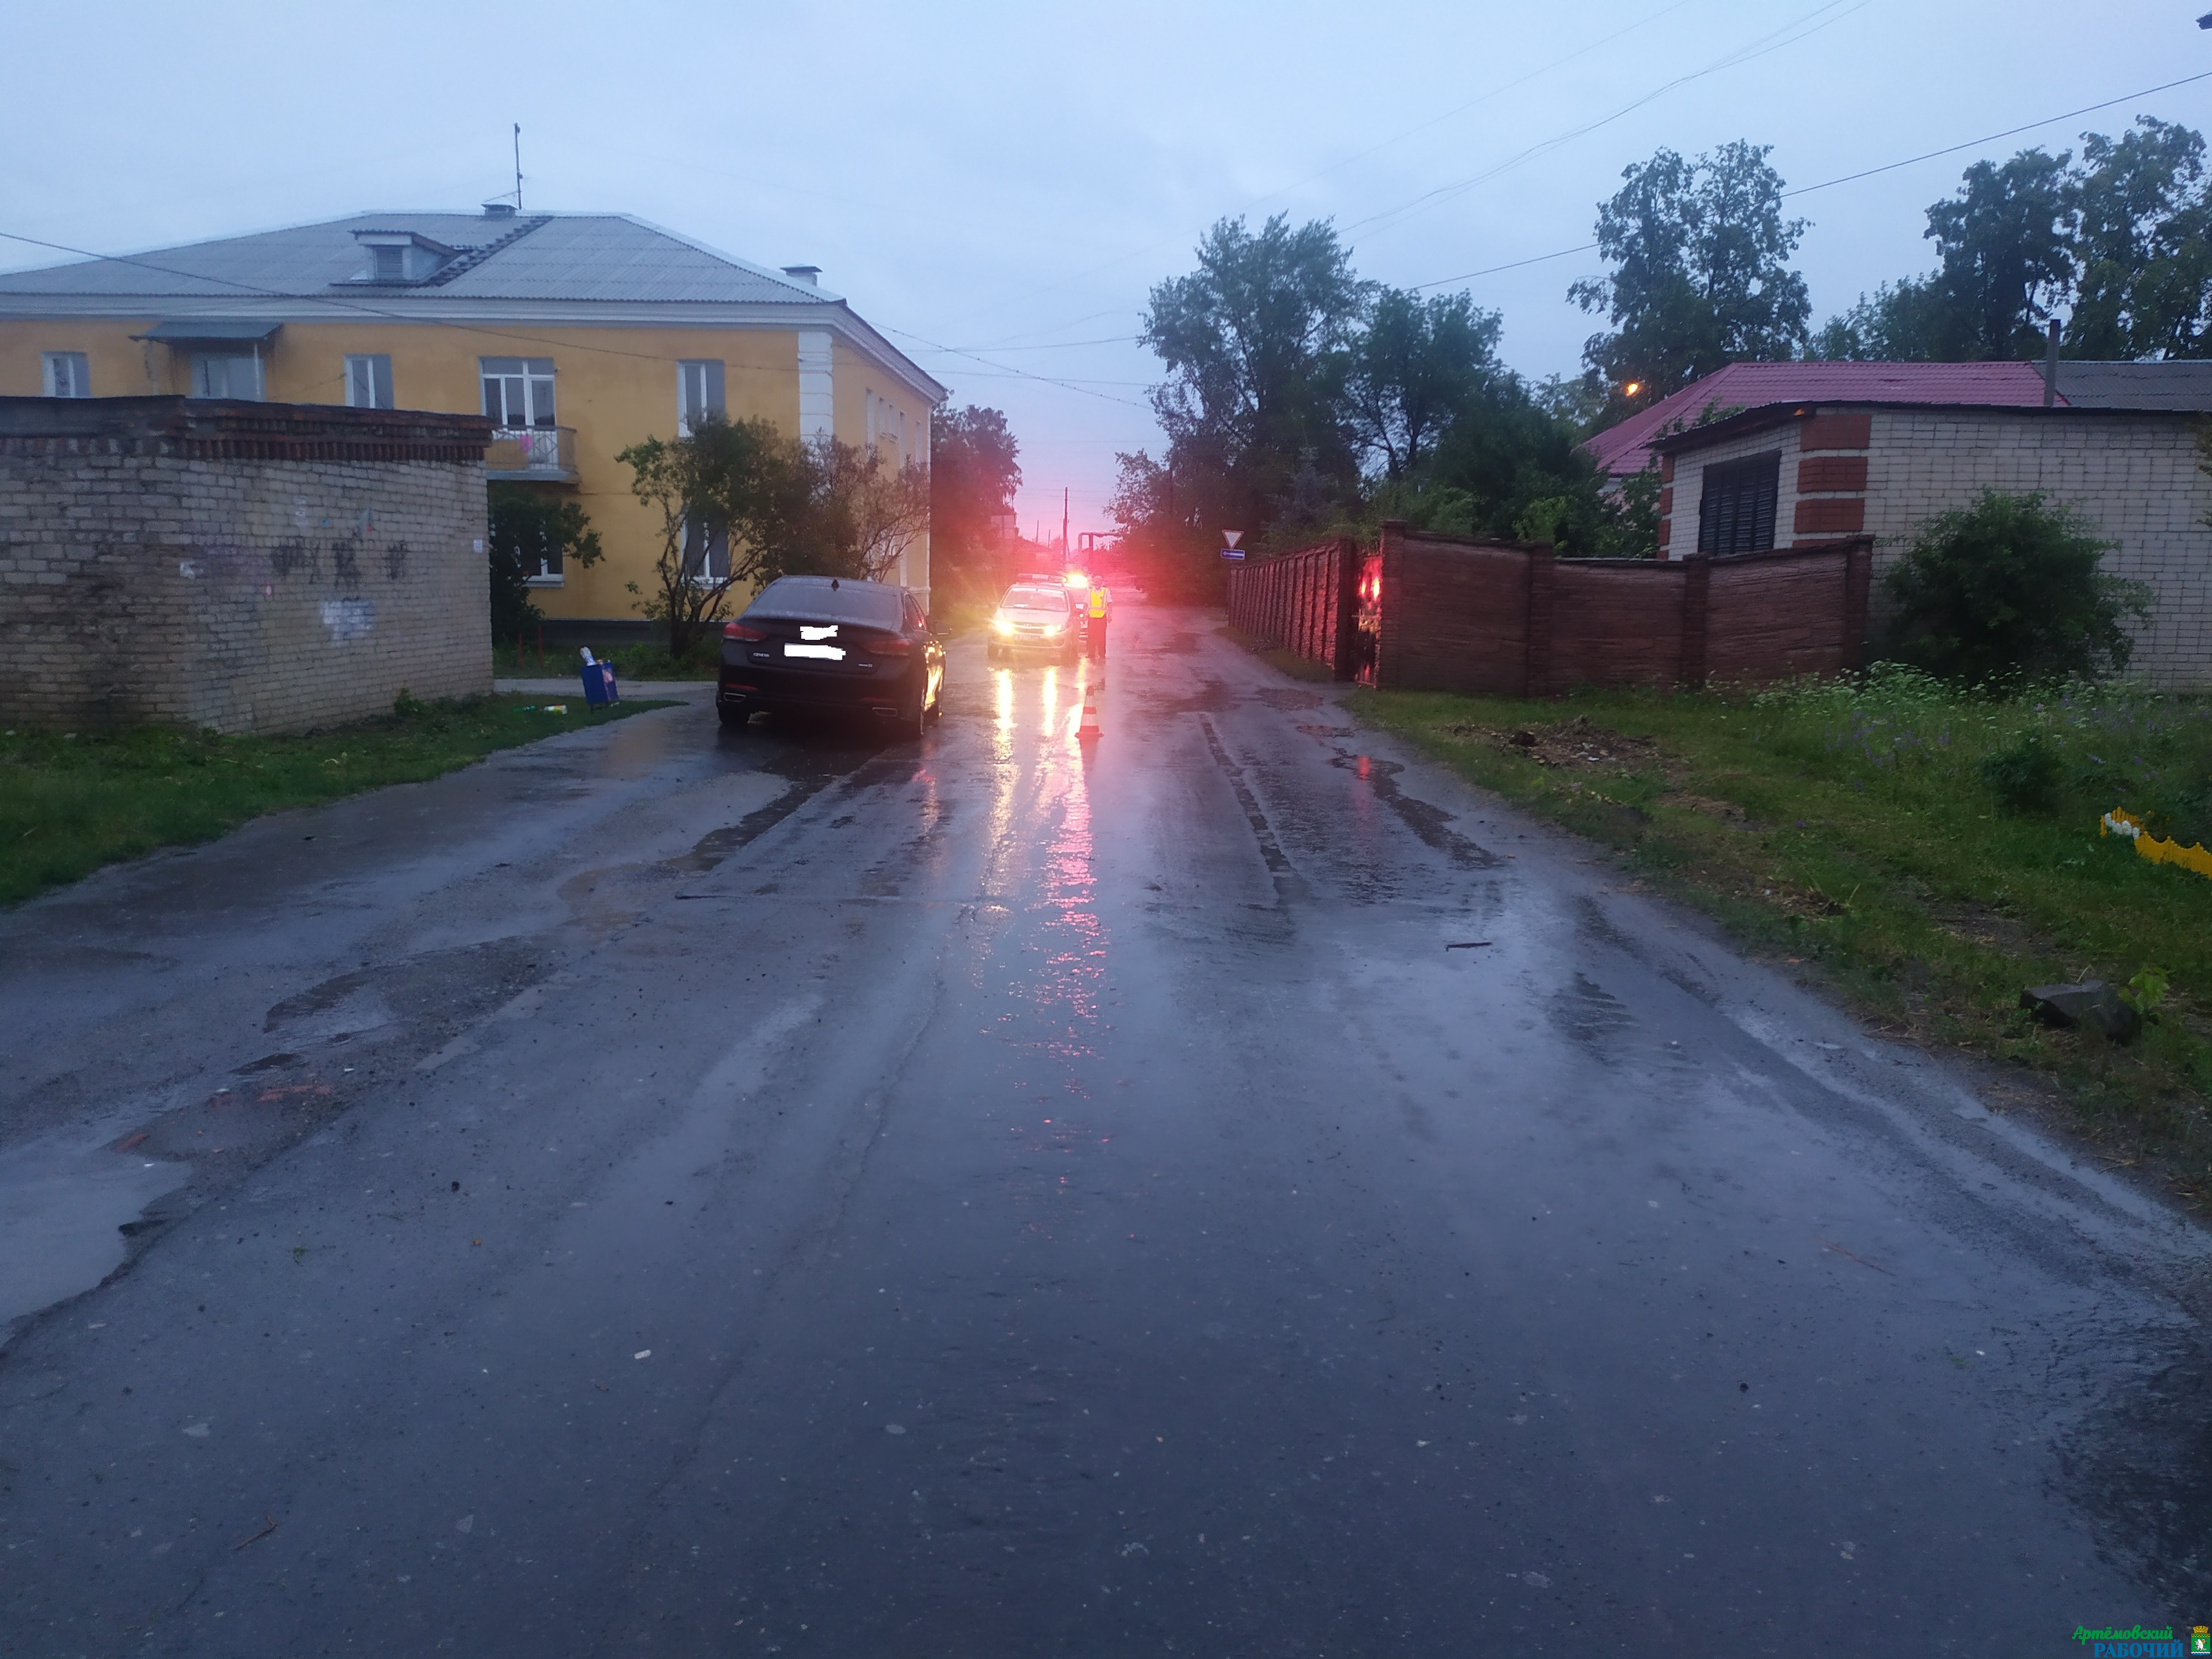 Пешеход, сбитый на улице в Артемовском, скончался в больнице